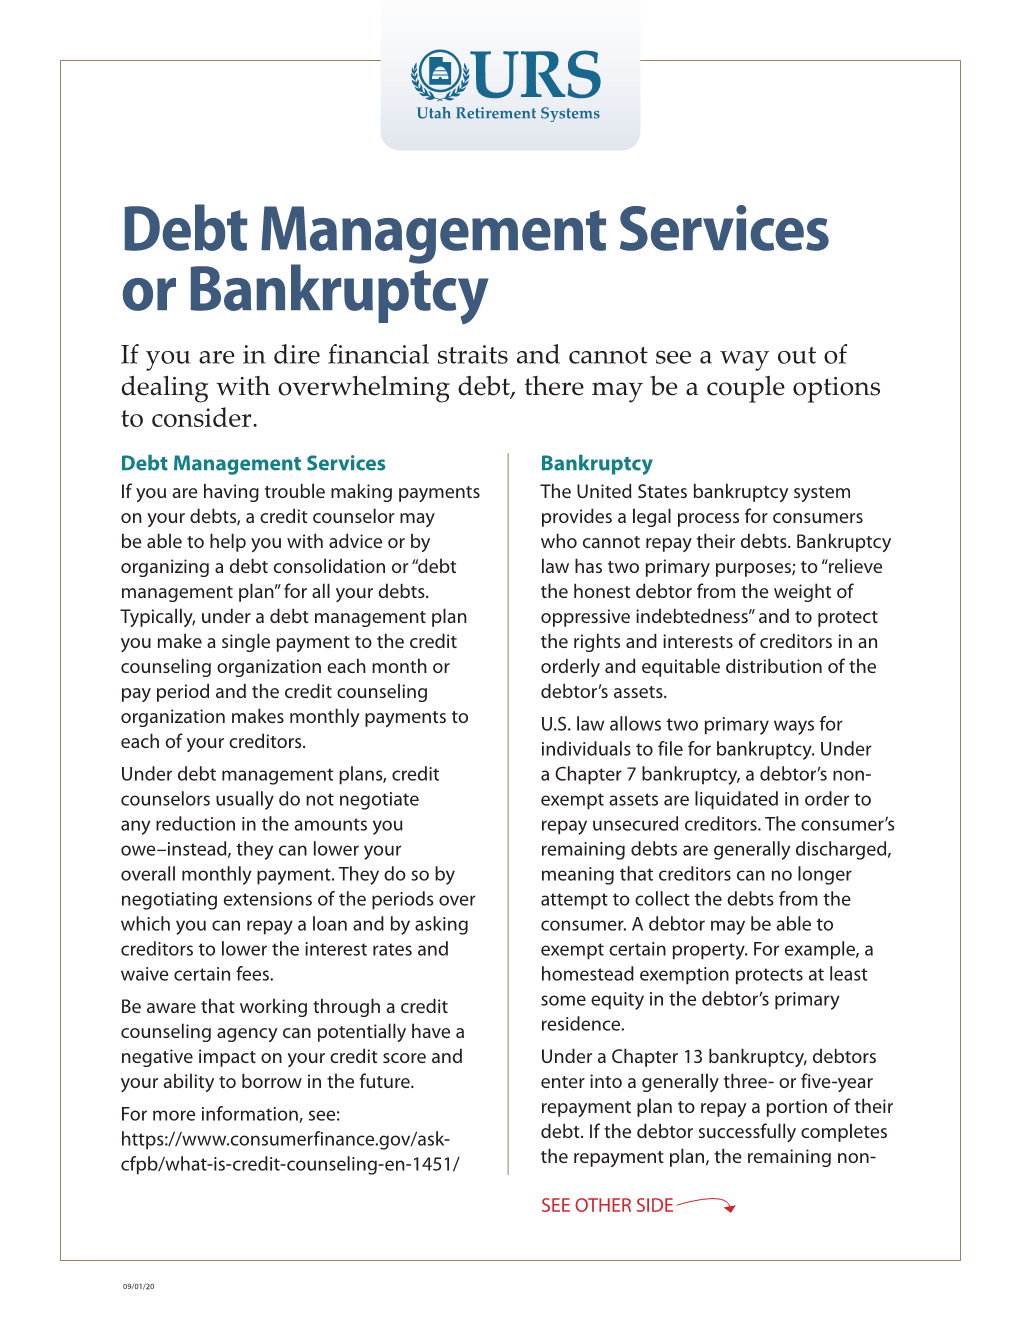 Debt Management Services Or Bankruptcy